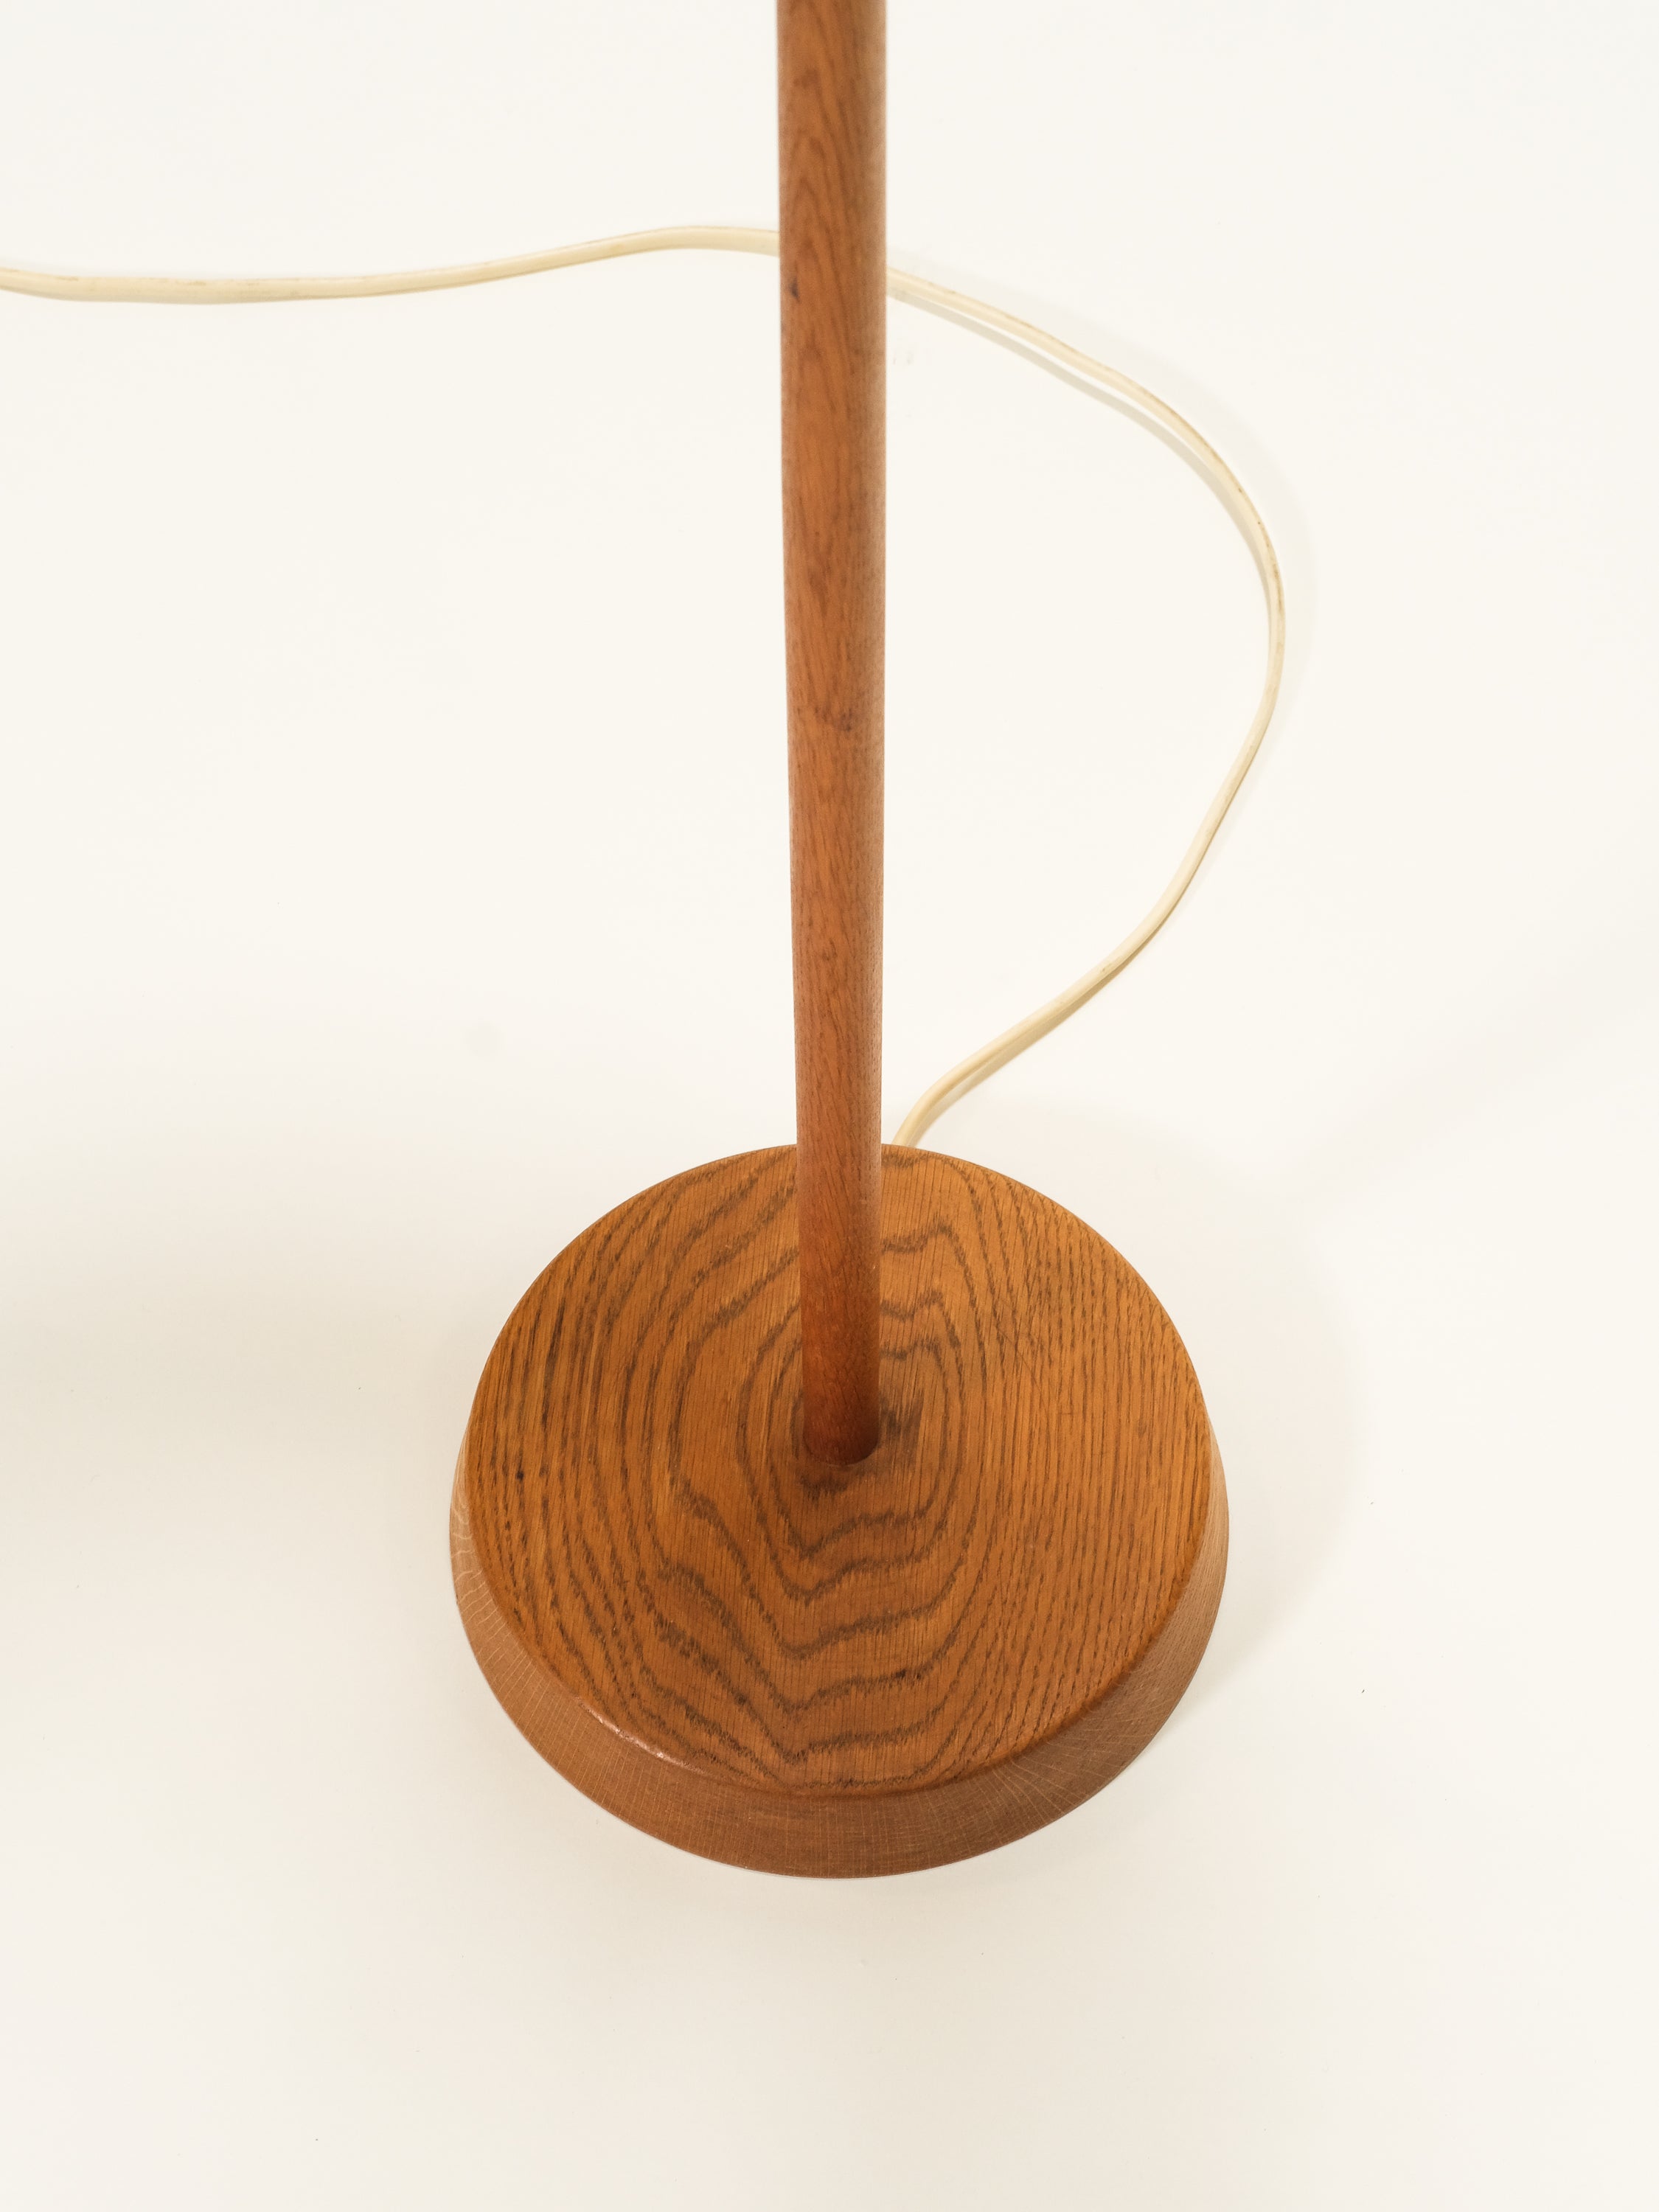 Oak Floor Lamp by Uno & Östen Kristiansson for Luxus, Sweden, 1960s